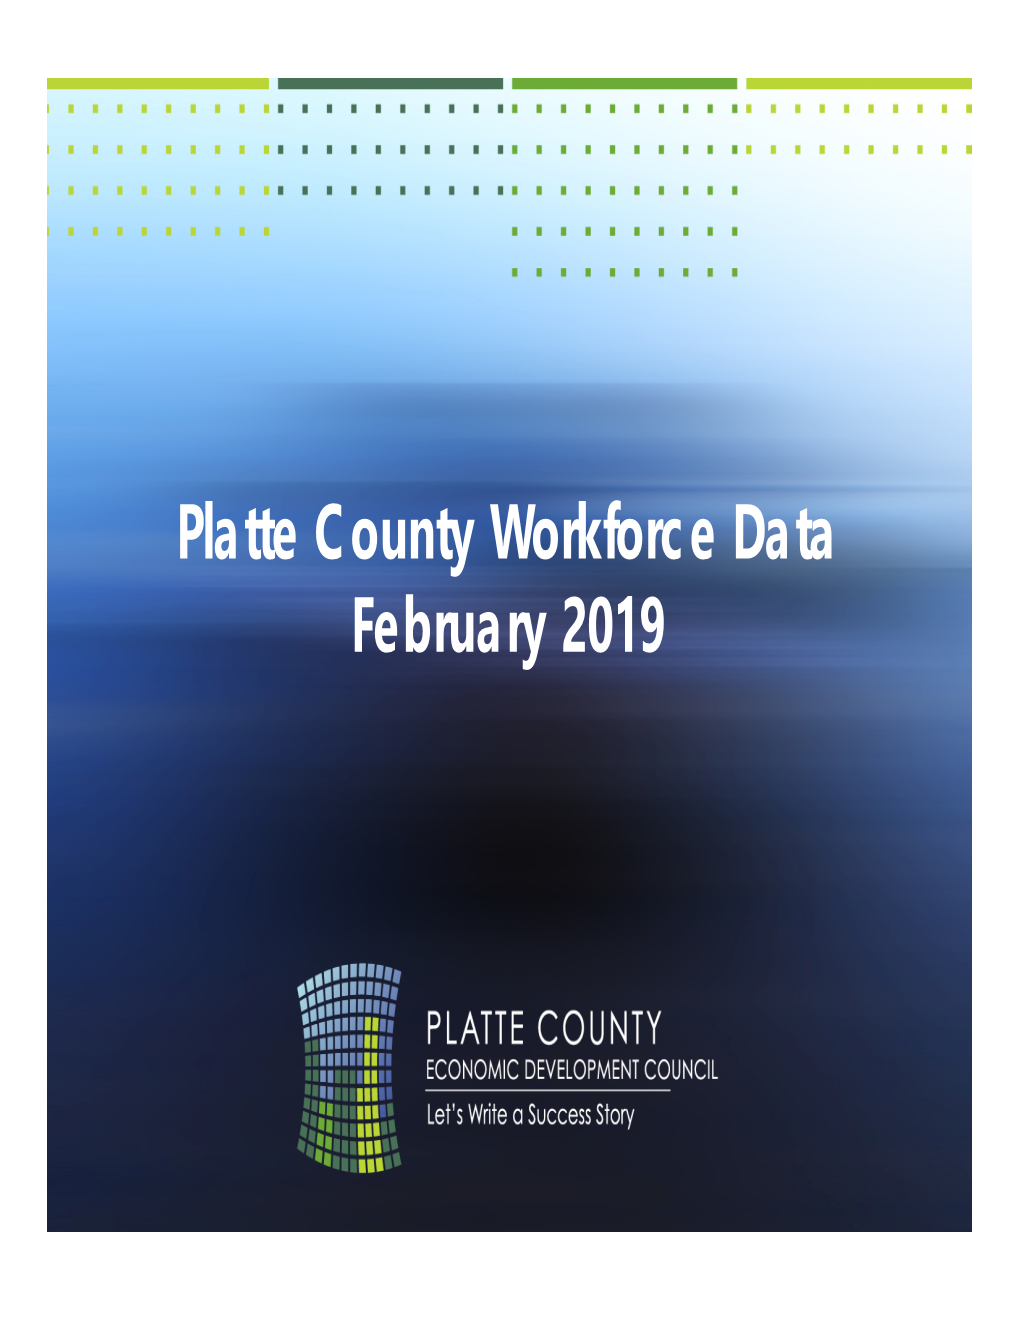 Platte County Workforce Data Presentation